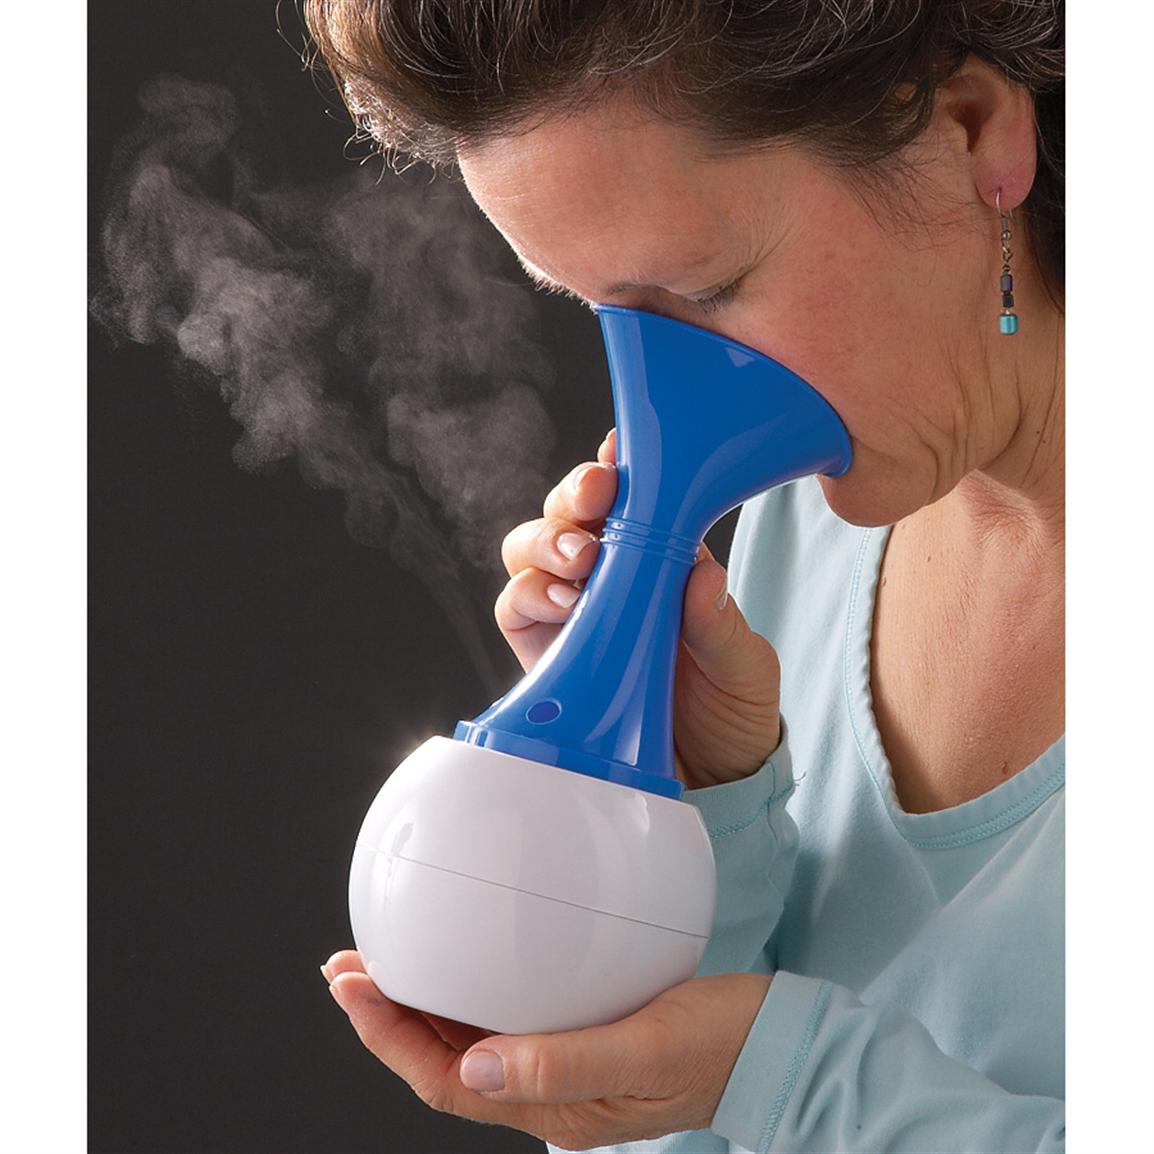 Steam inhaler blocked nose